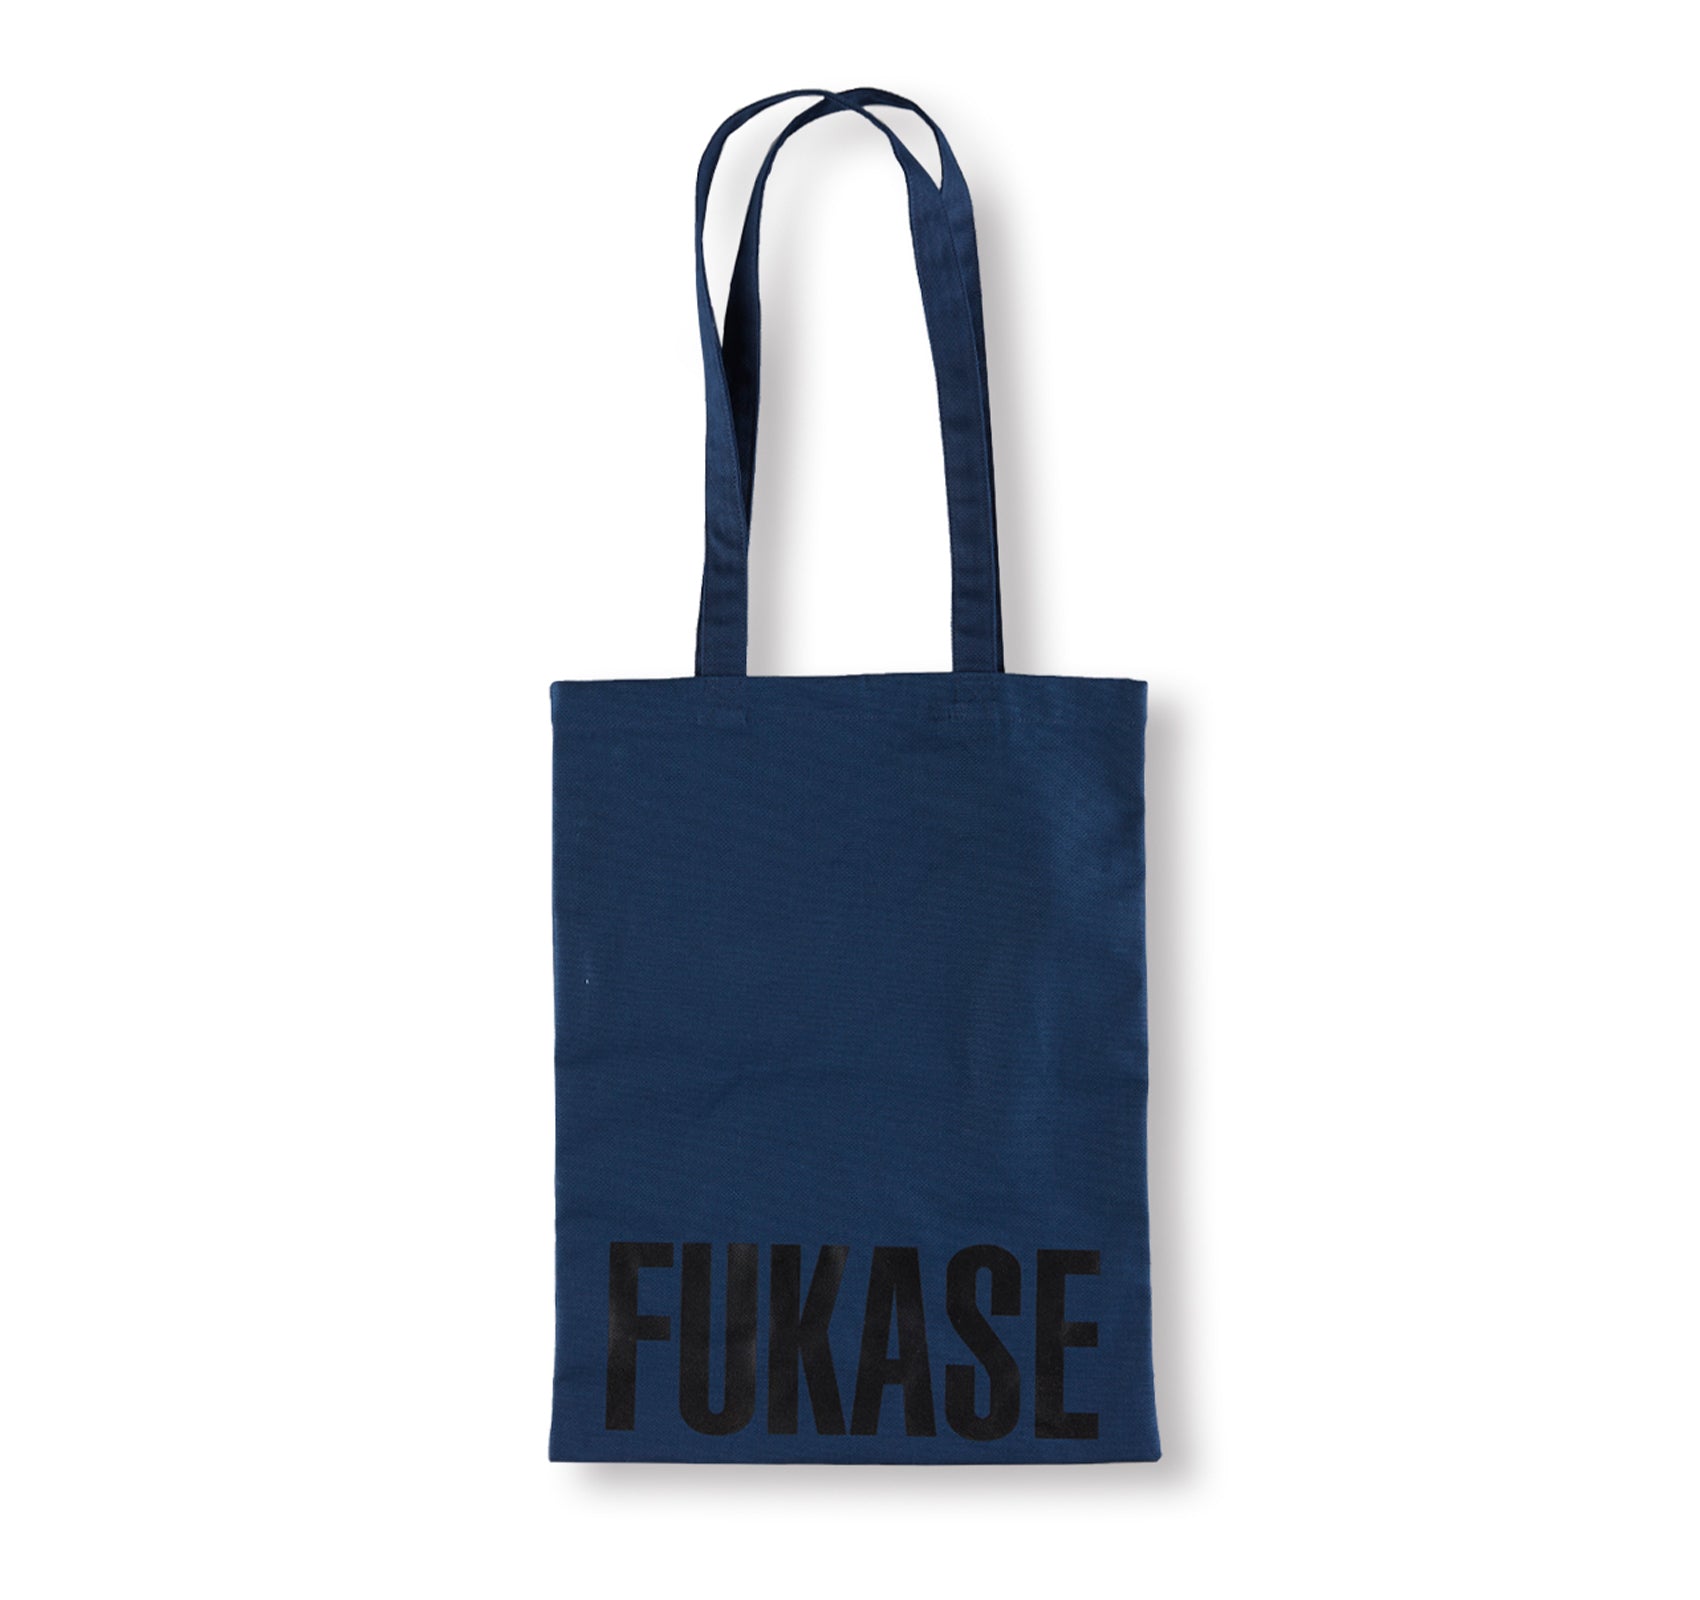 FUKASE TOTE BAG by Masahisa Fukase